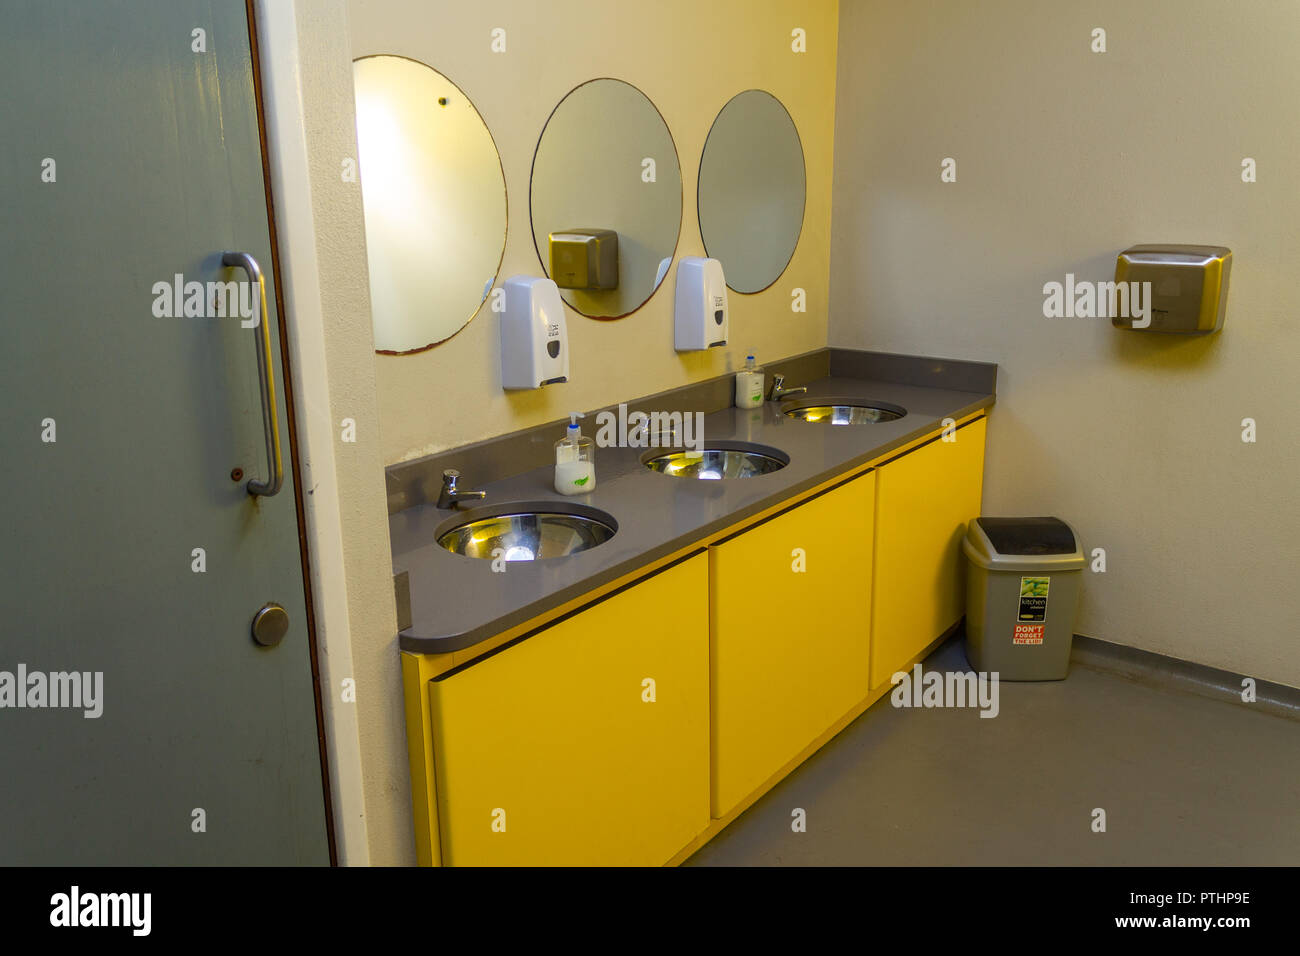 Waschraum mit Waschbecken und Spiegel in eine öffentliche Toilette oder Waschbecken Stockfoto